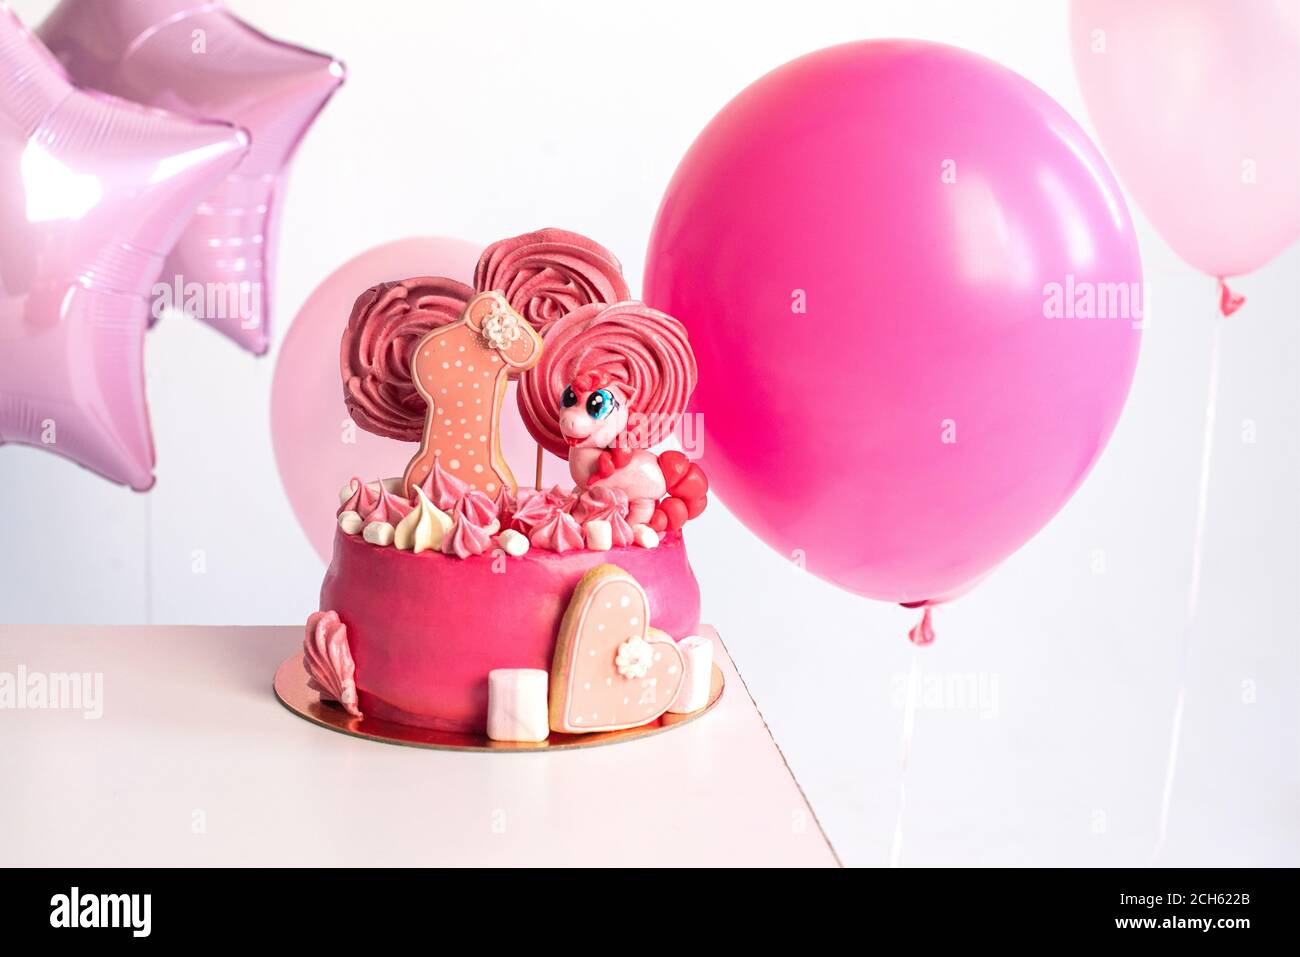 Gâteau rose pour l'anniversaire d'une fille d'un an. Ballons. unicorn. Russie 2020, août Banque D'Images